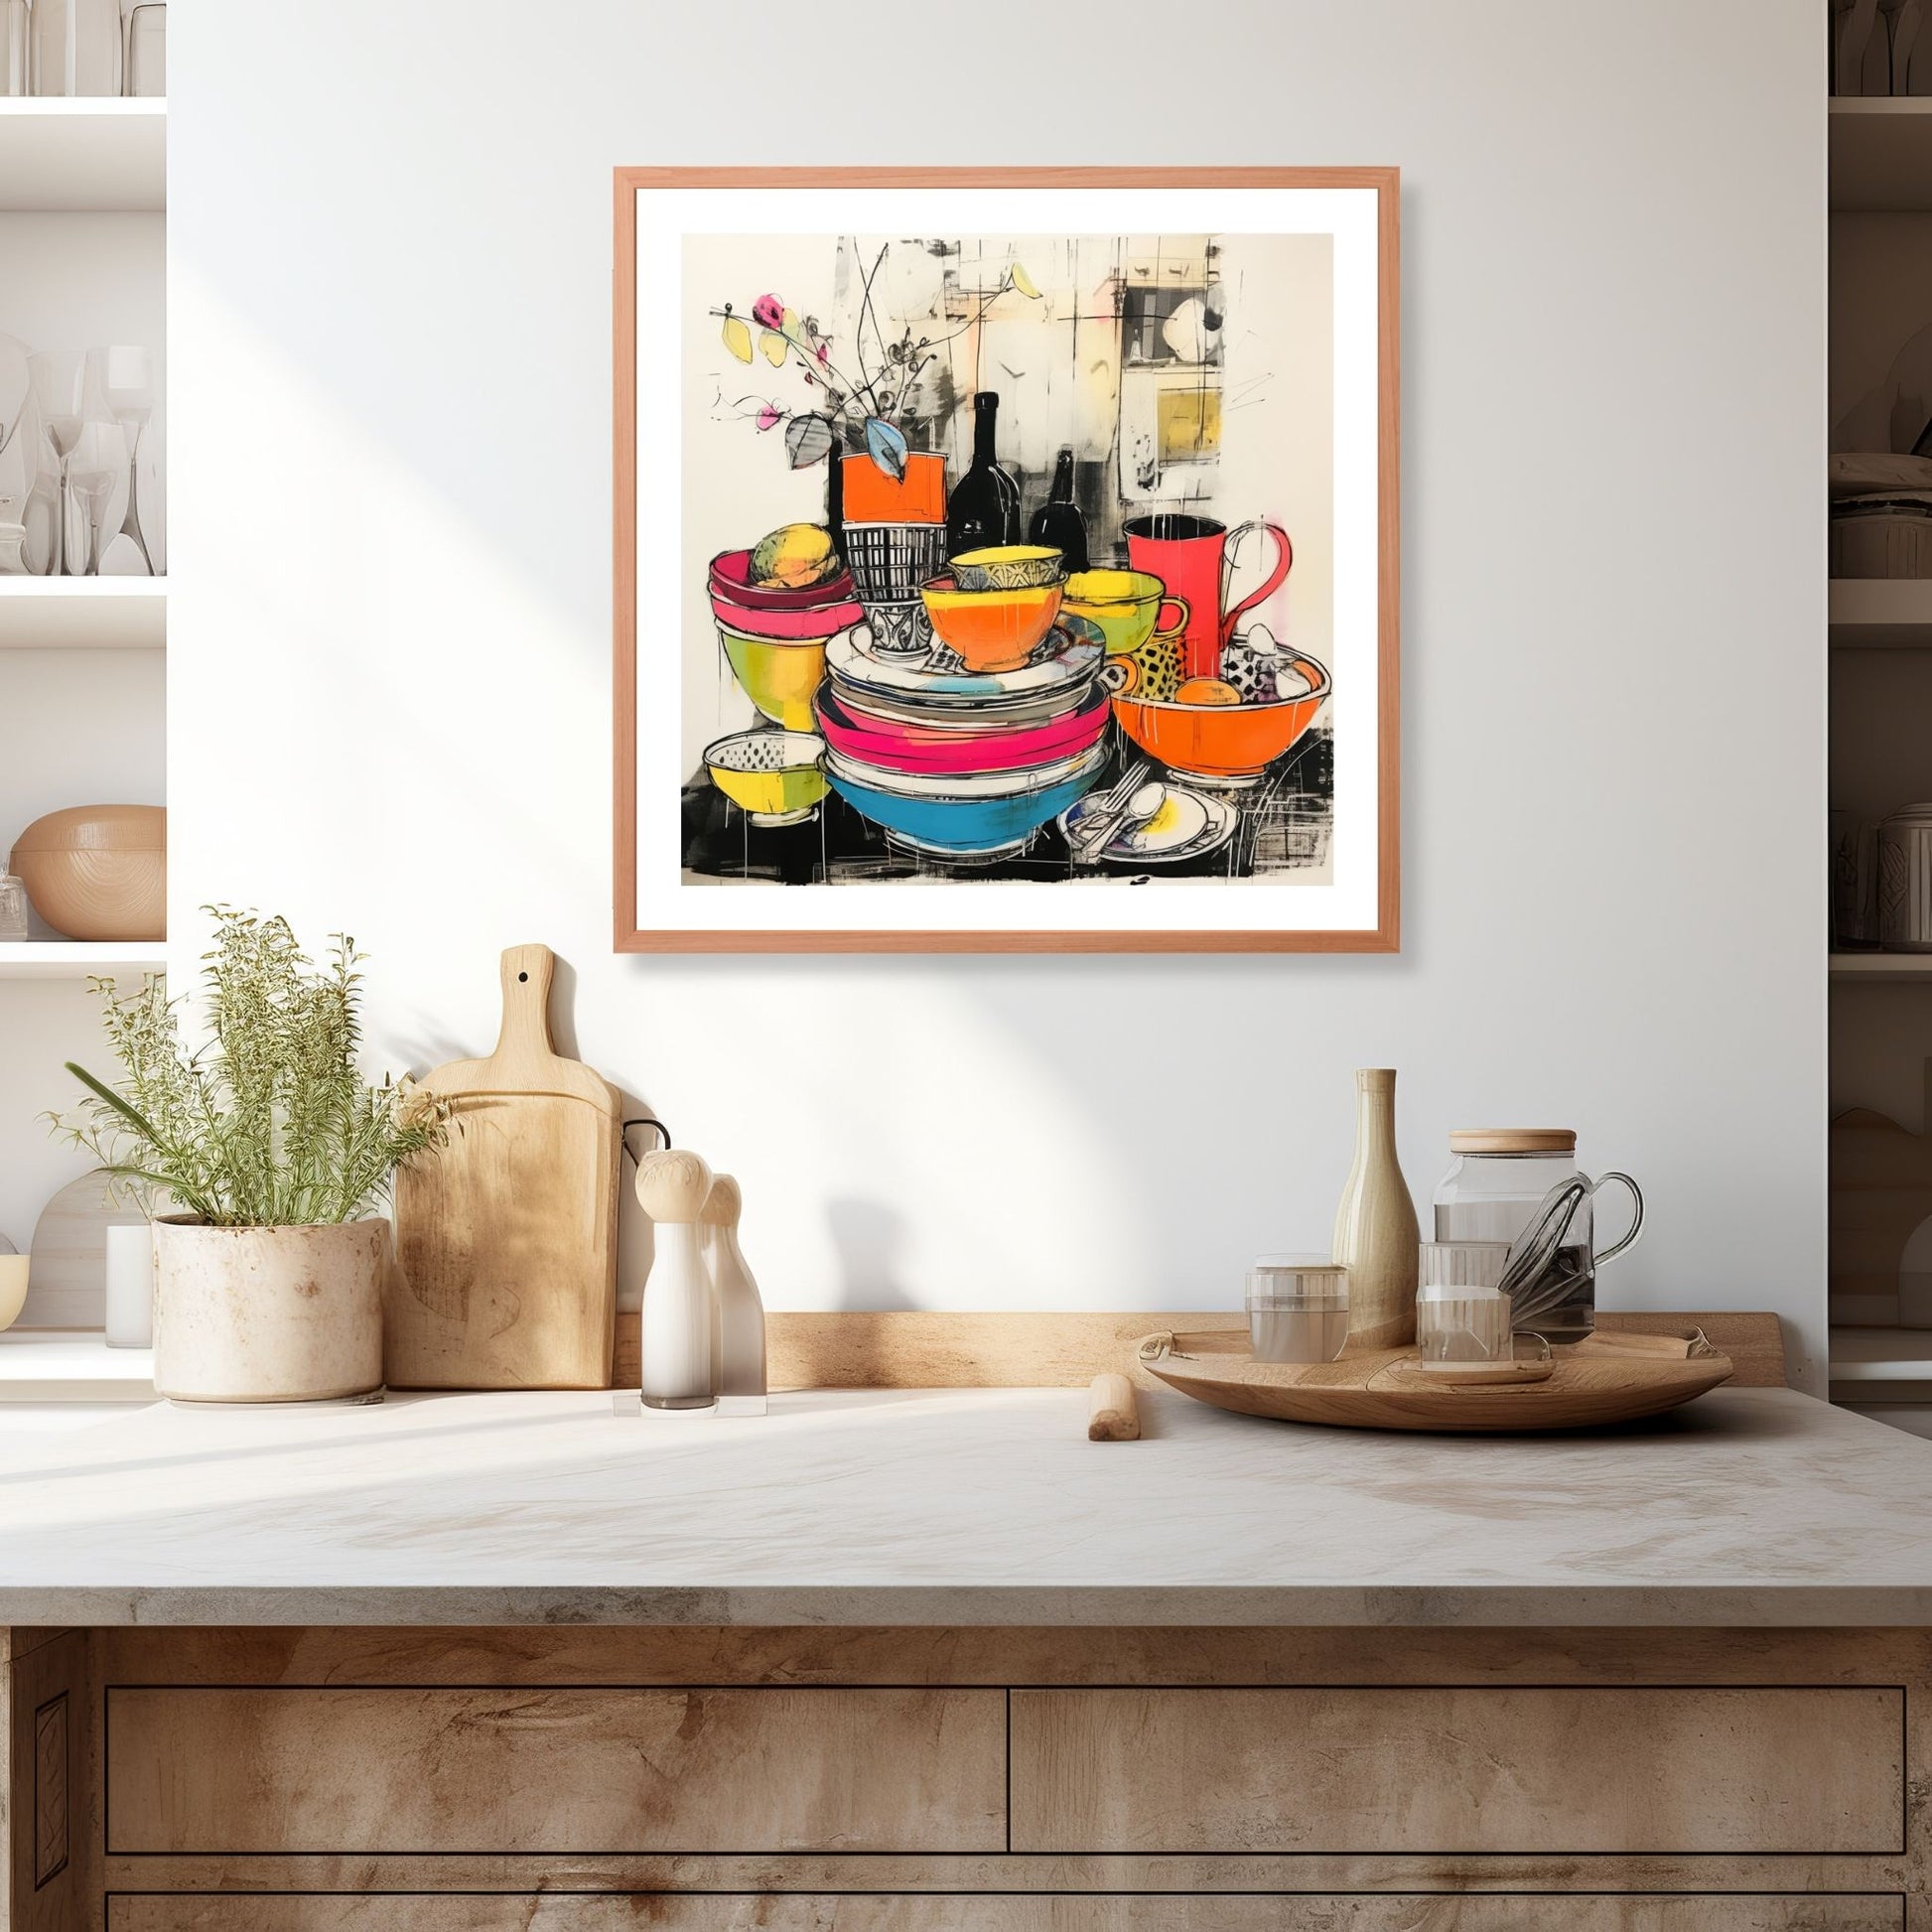 Drawn Kitchen Art plakat og lerret viser et herlig borddekor med skåler og tallerkener i en levende og fargerik stil. Illustrasjonen viser motivet som plakat i en ramme som henger over en kjøkkenbenk.